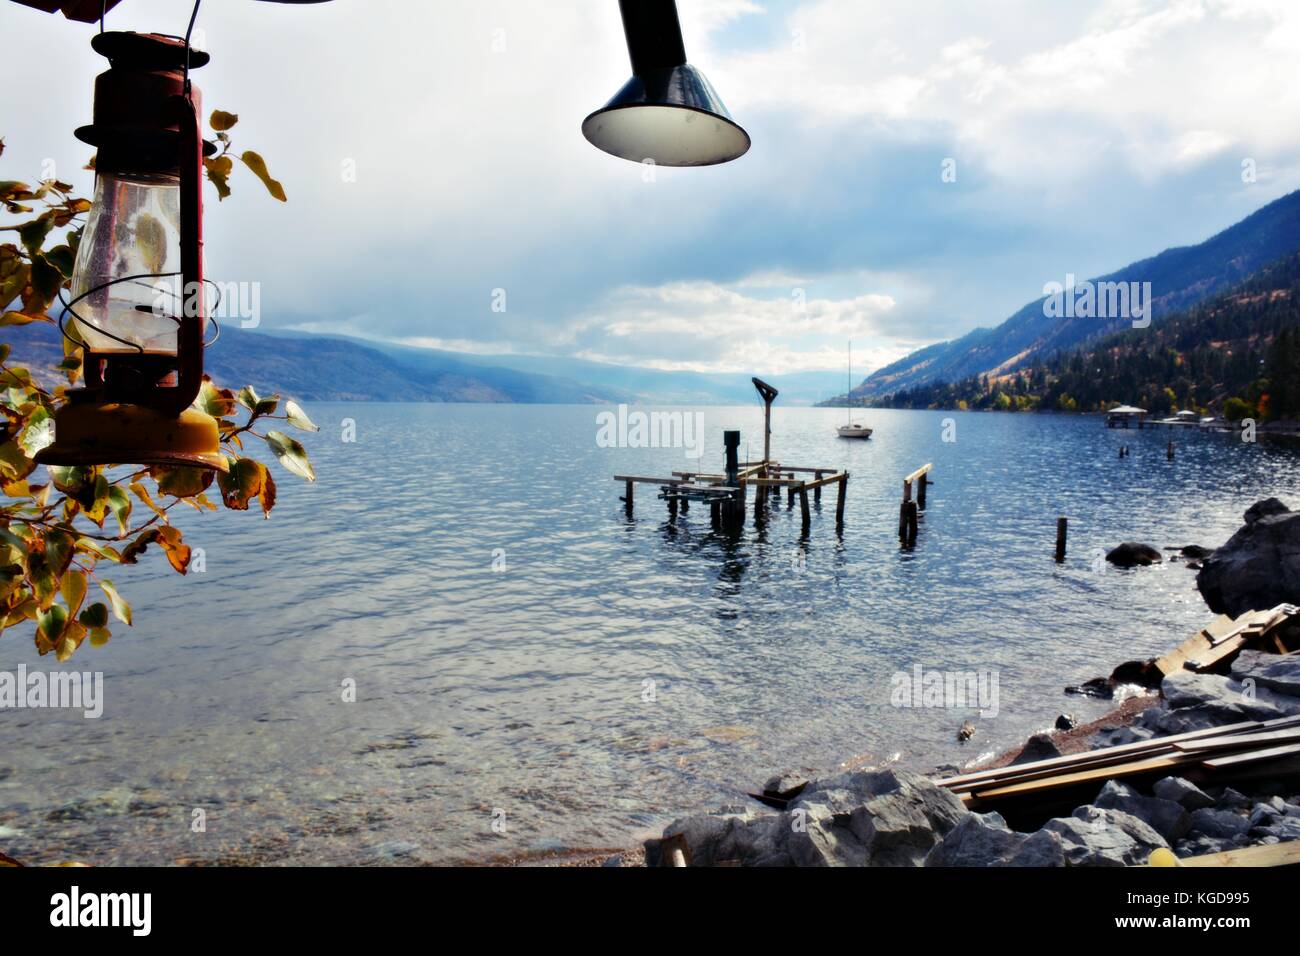 Una bella giornata di sole al lago Okanagan, peachland.British Columbia, Canada Foto Stock